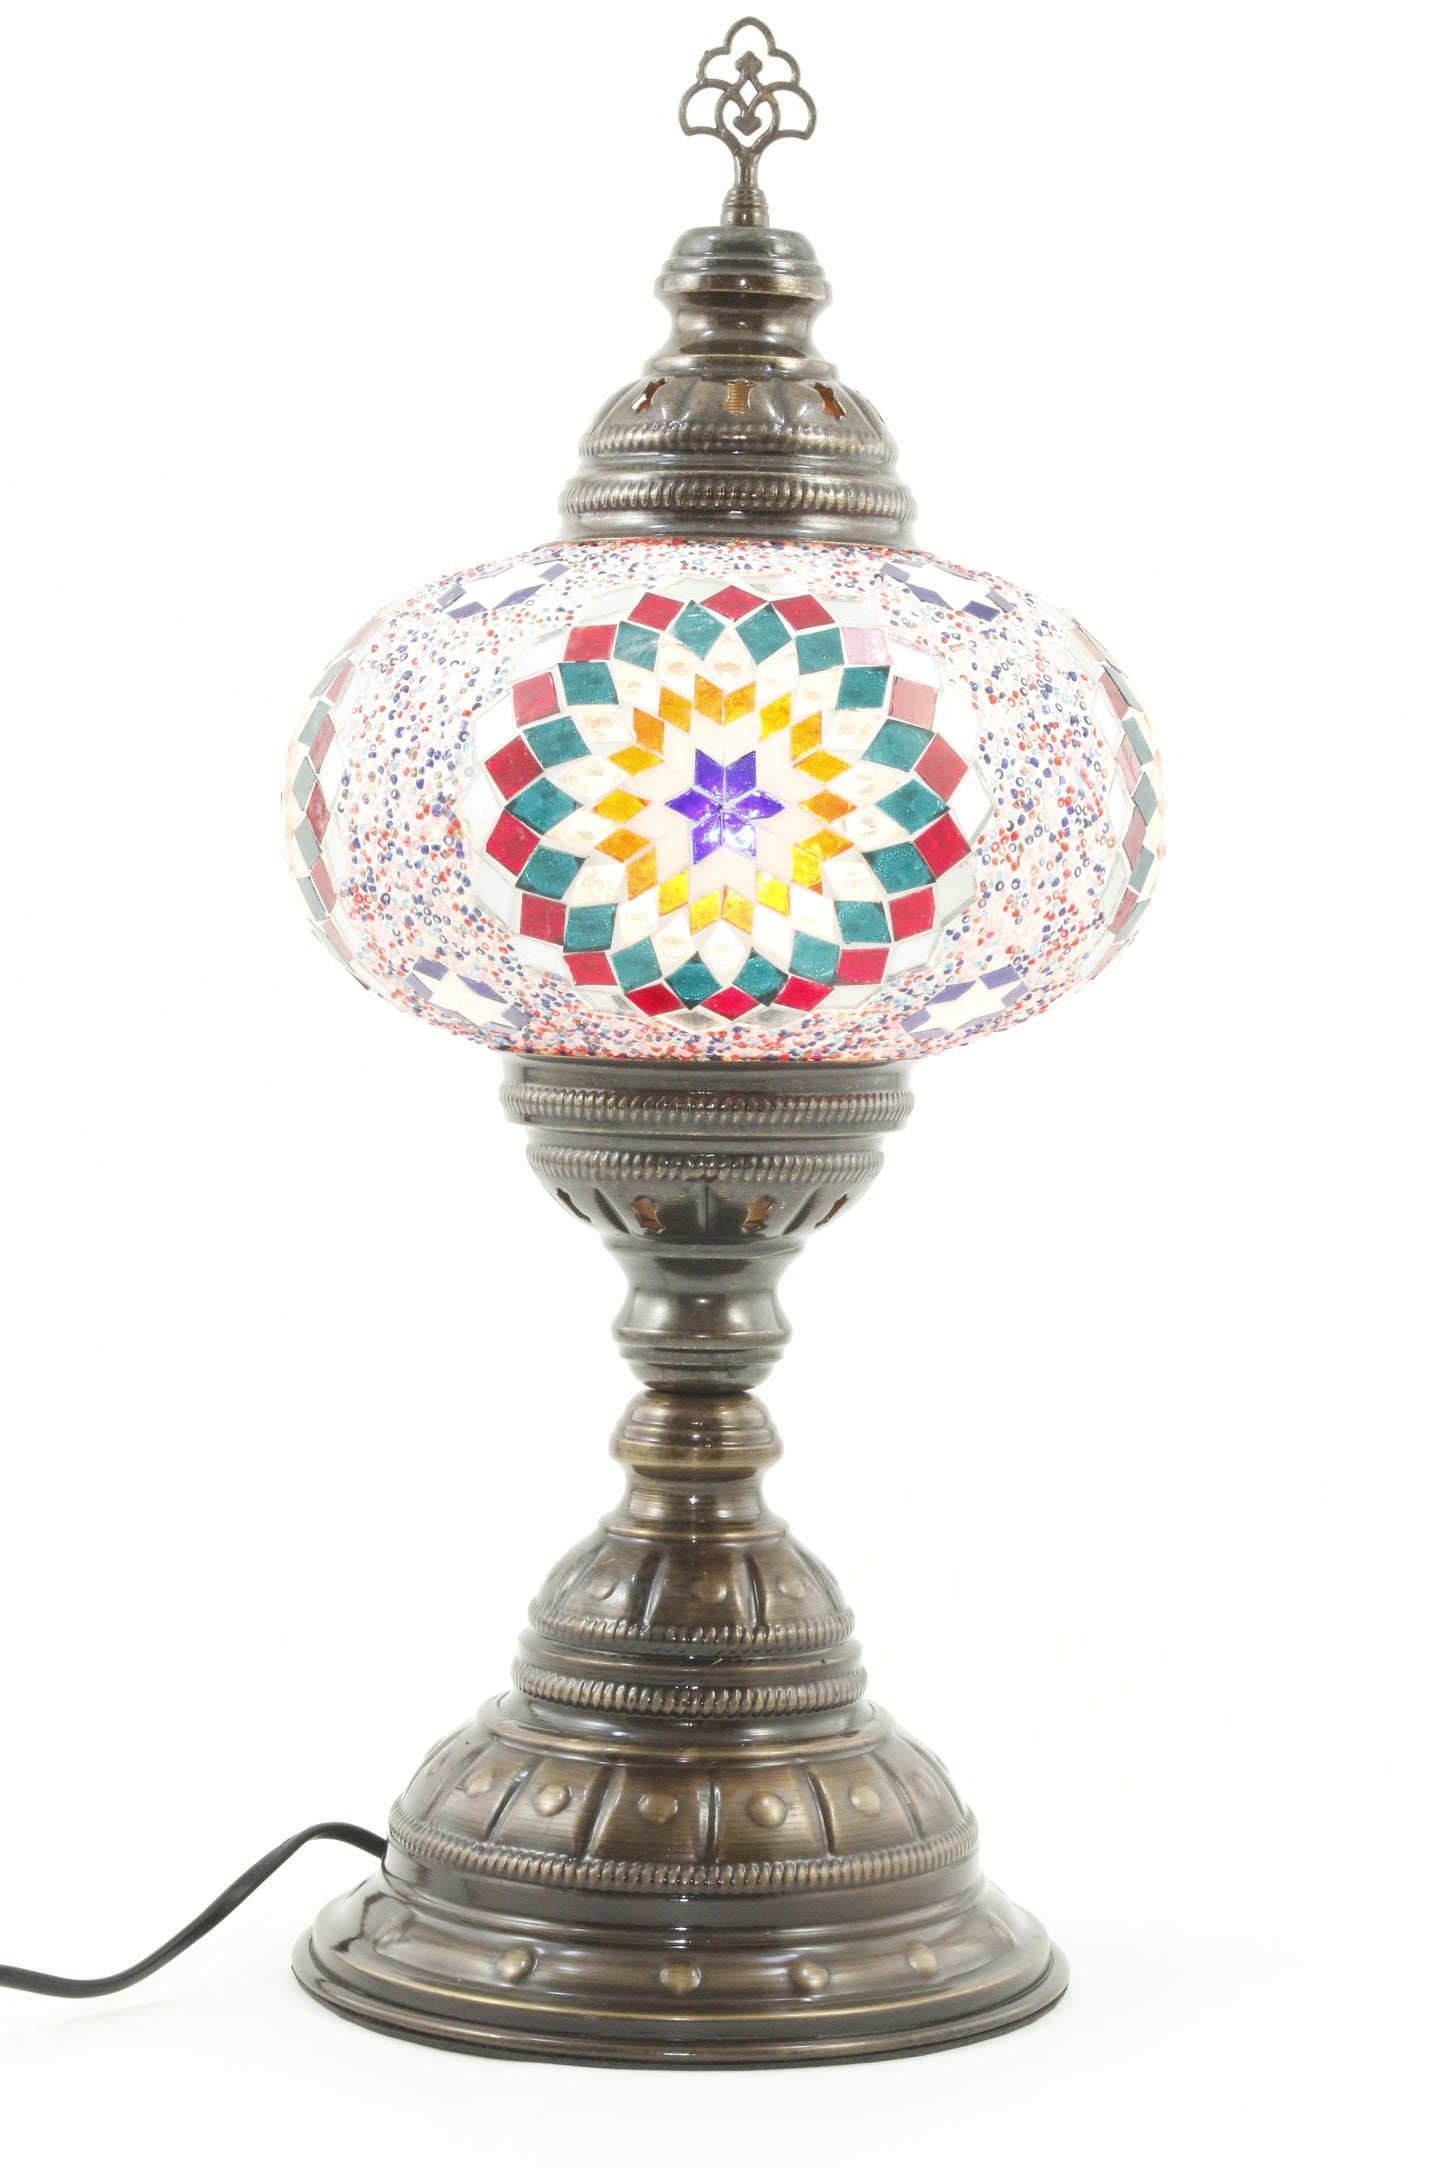 TURKISH MOSAIC TABLE LAMP MB4 RAINBOW 3-TURNED ON